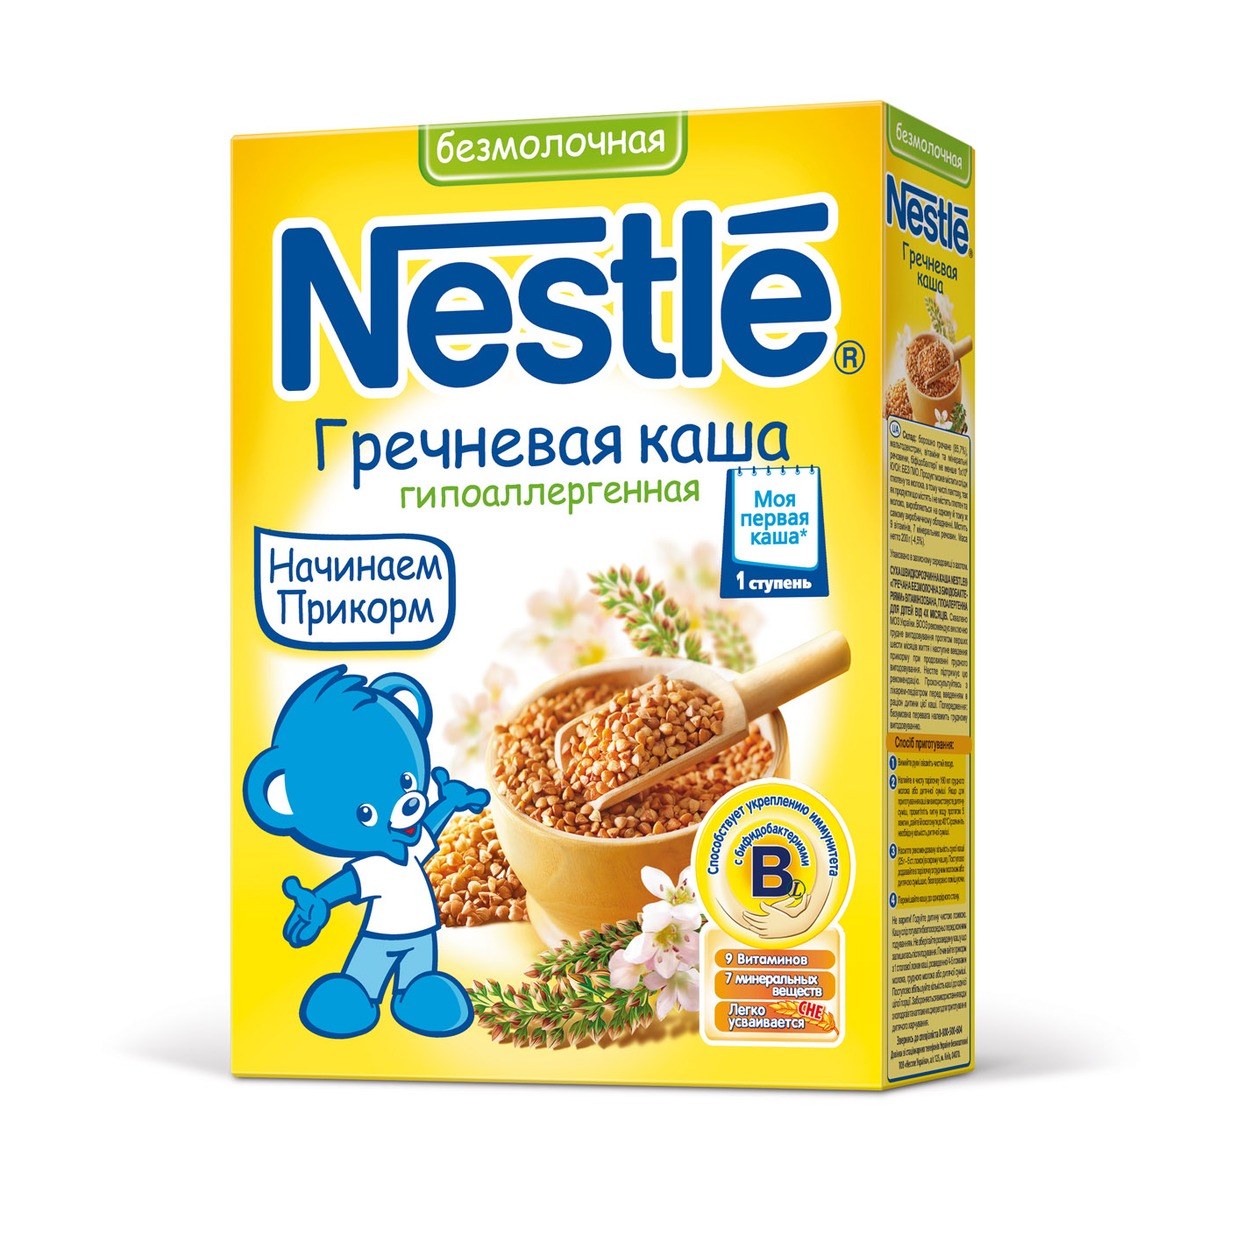 Каша Nestle Гречневая 200г по акции в Пятерочке